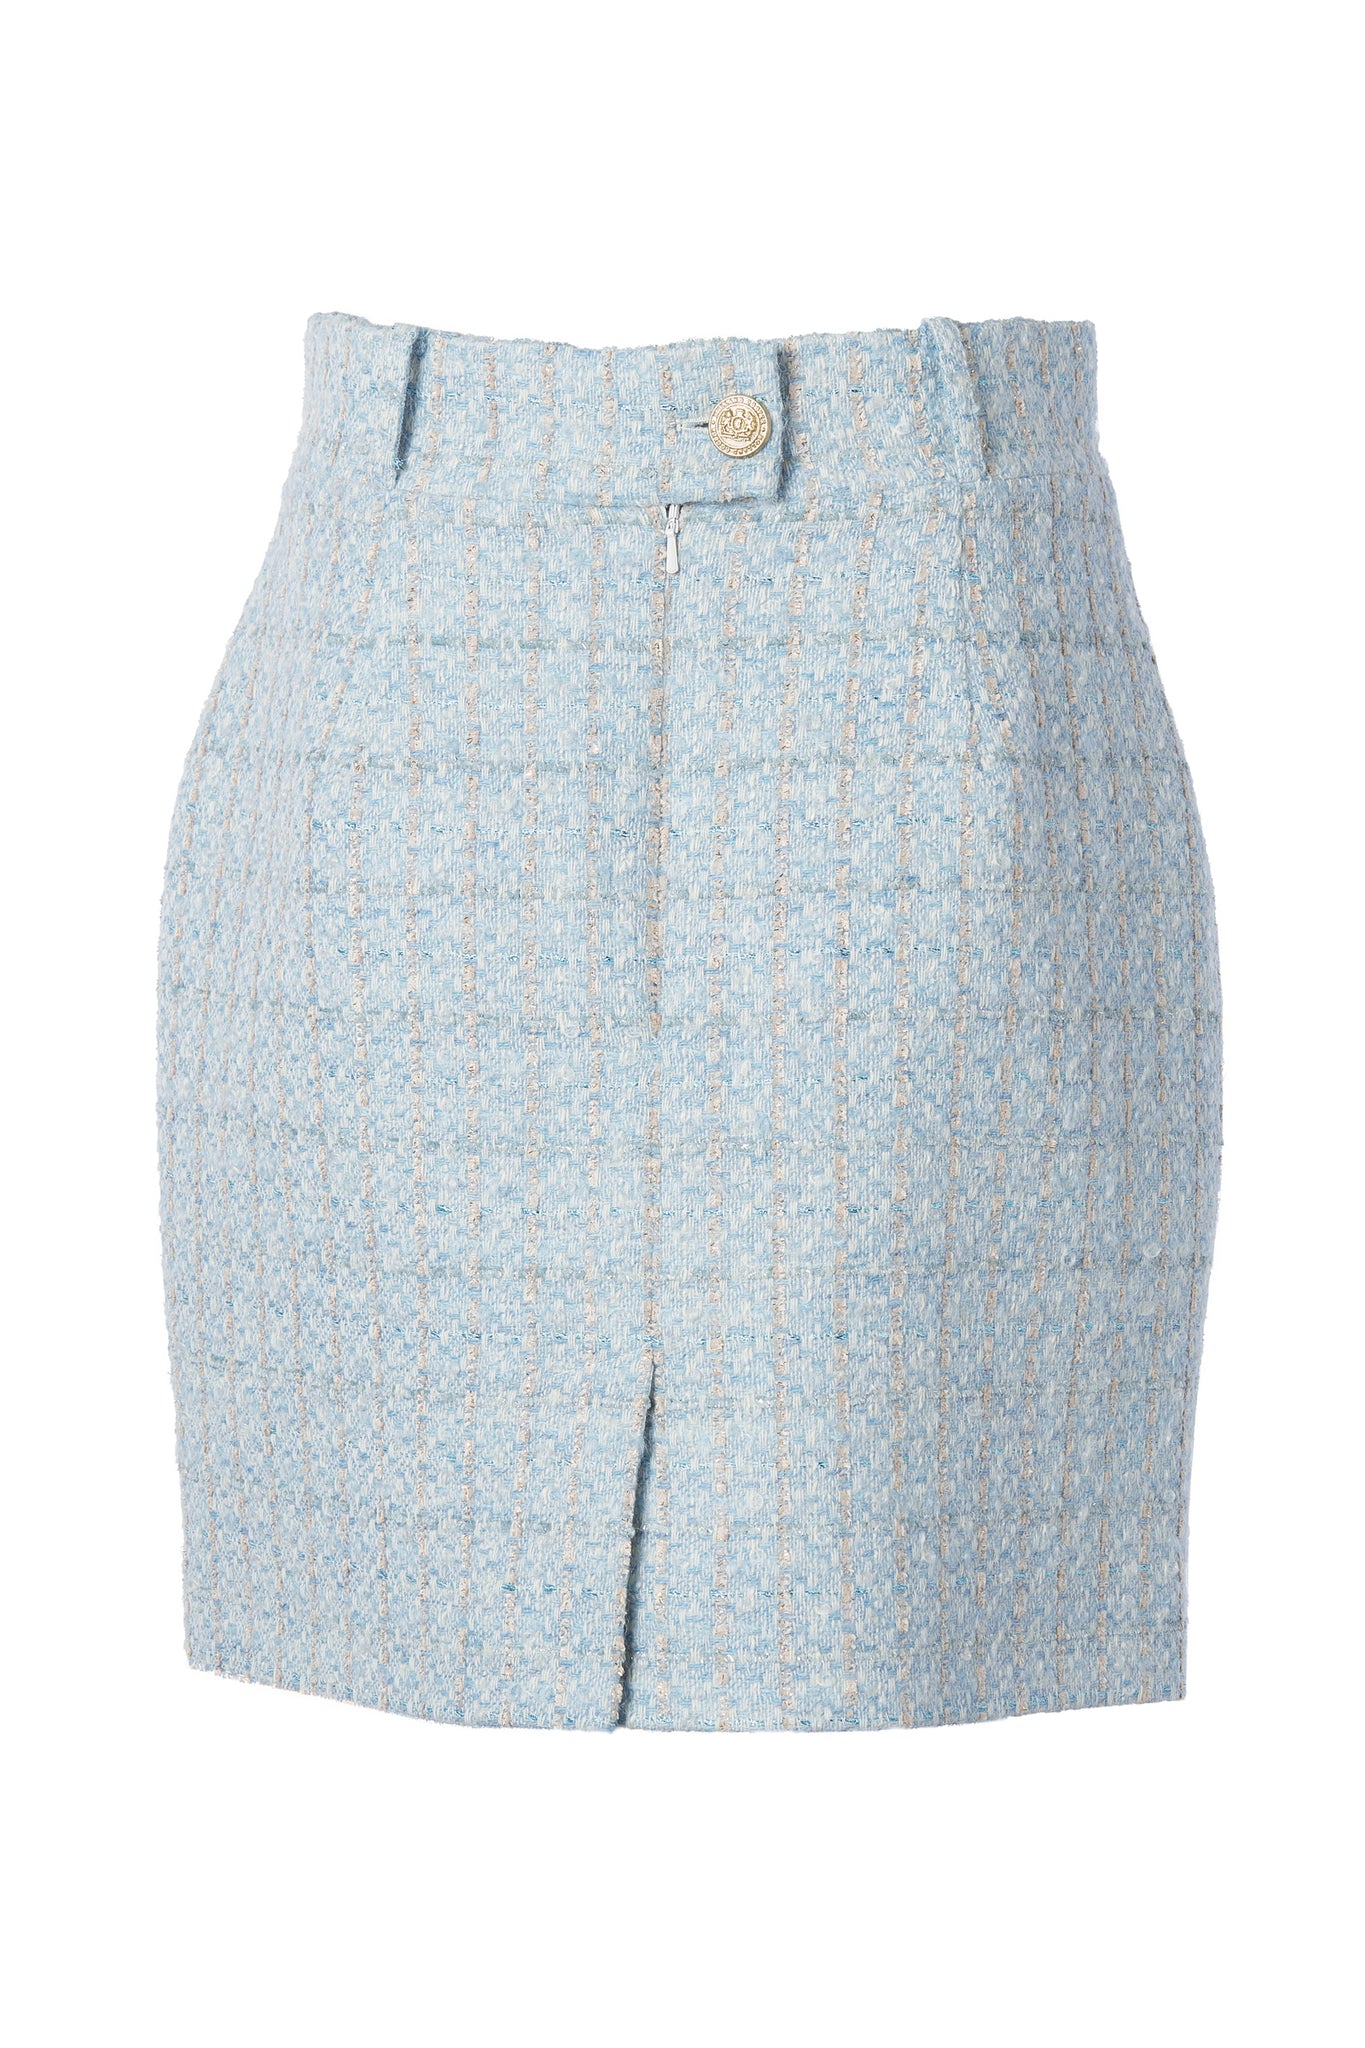 Regency Skirt (Sky Blue Boucle)